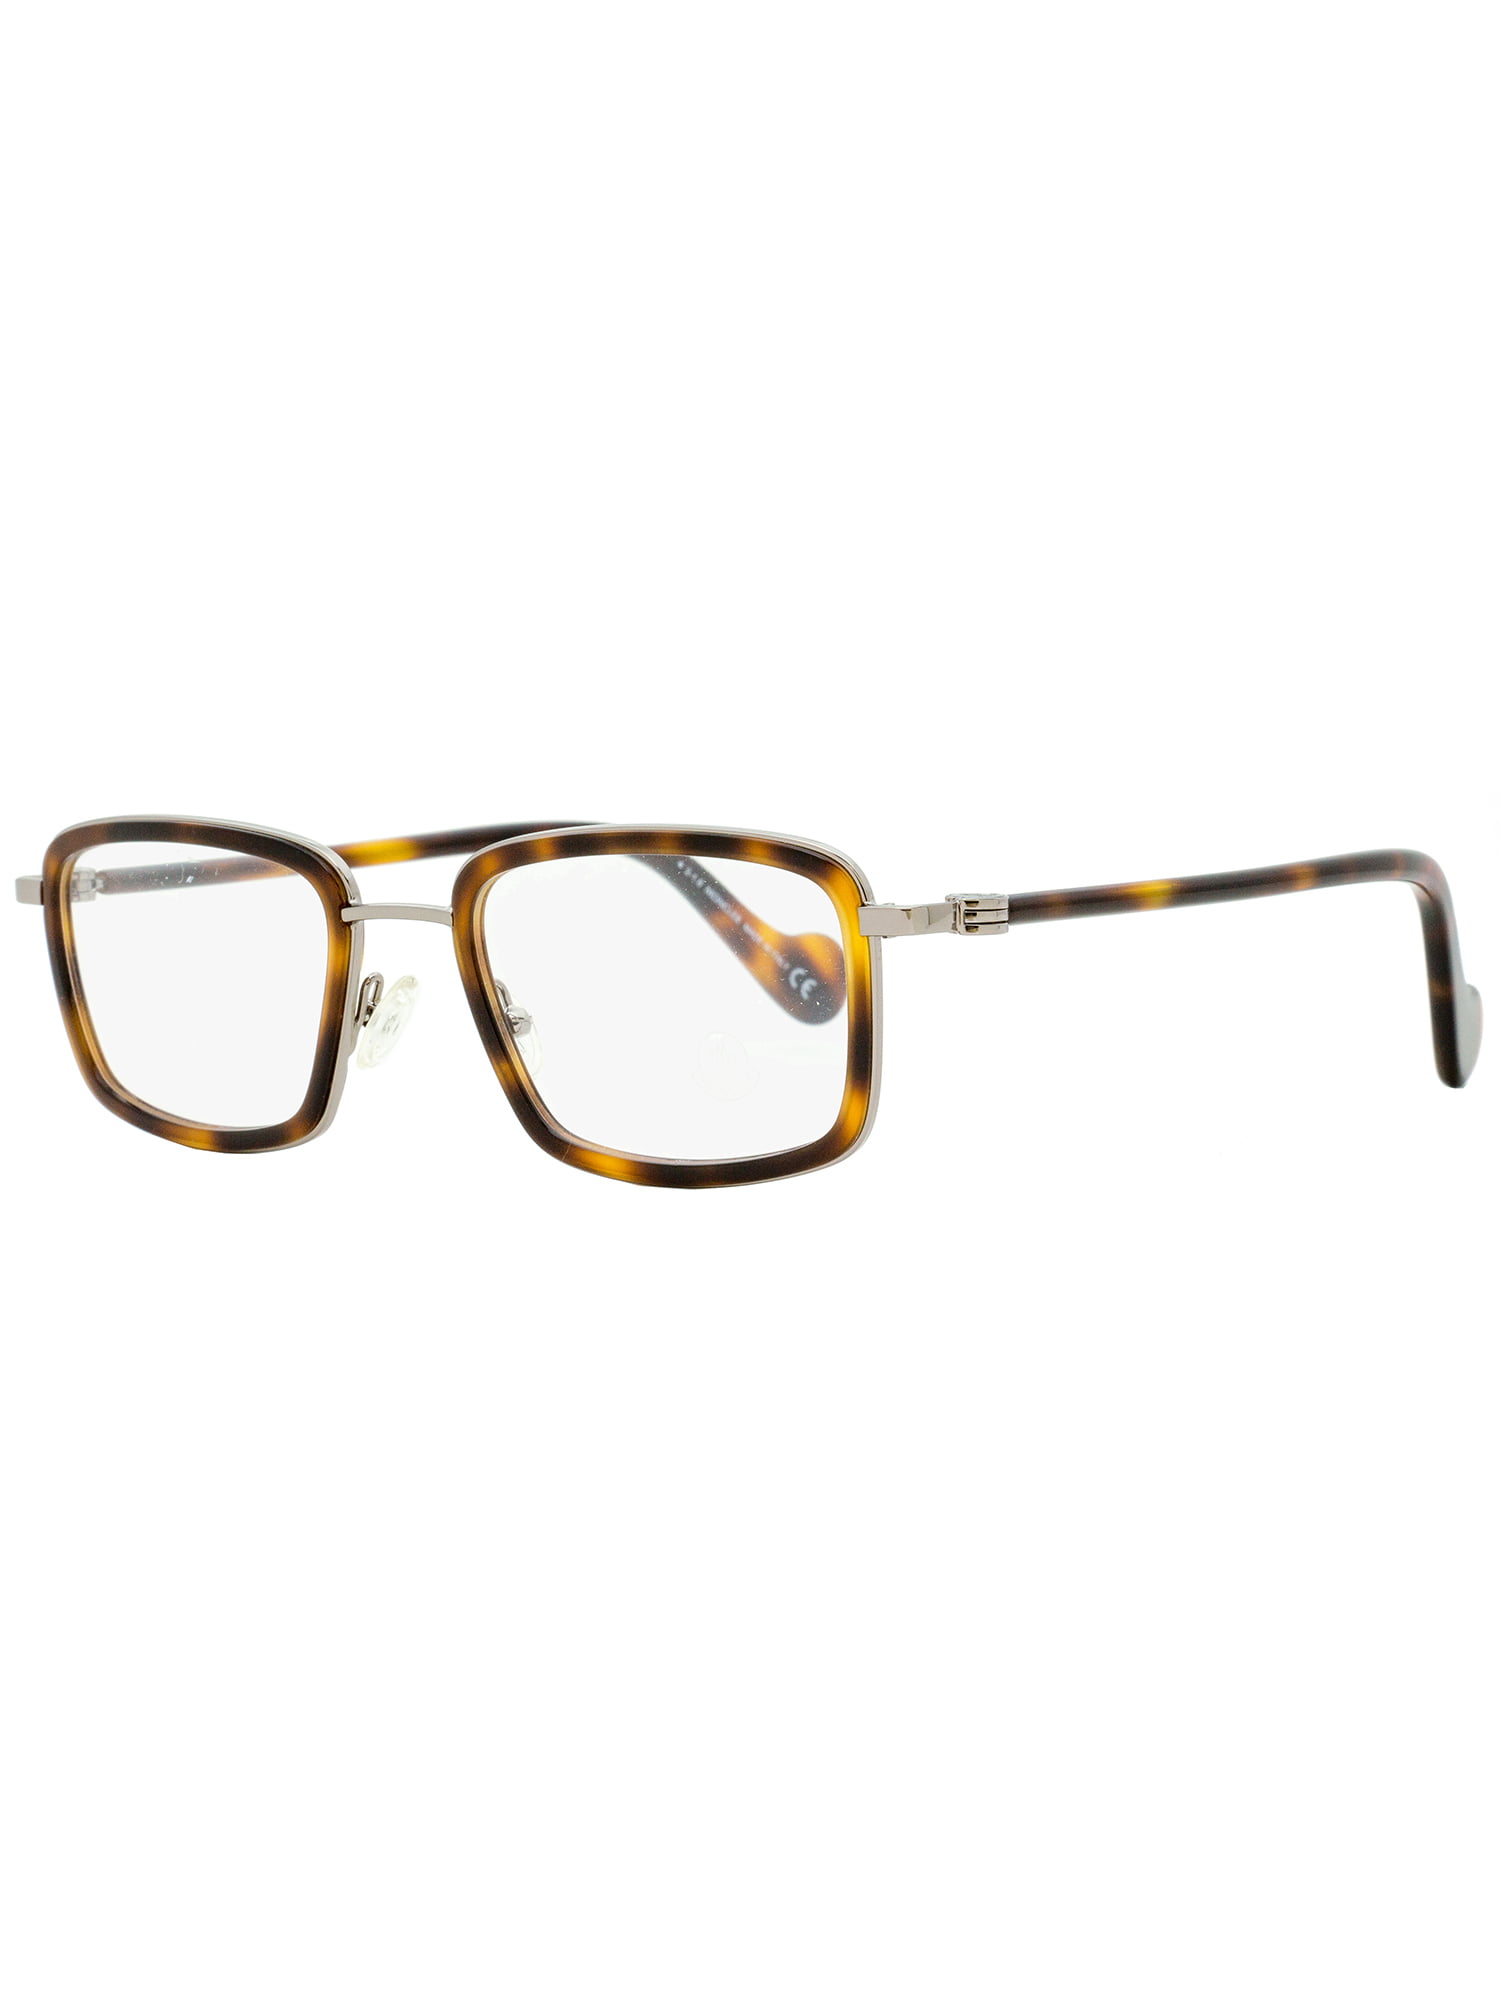 Moncler Rectangular Eyeglasses ML5026 056 Havana/Gunmetal 51mm 5026